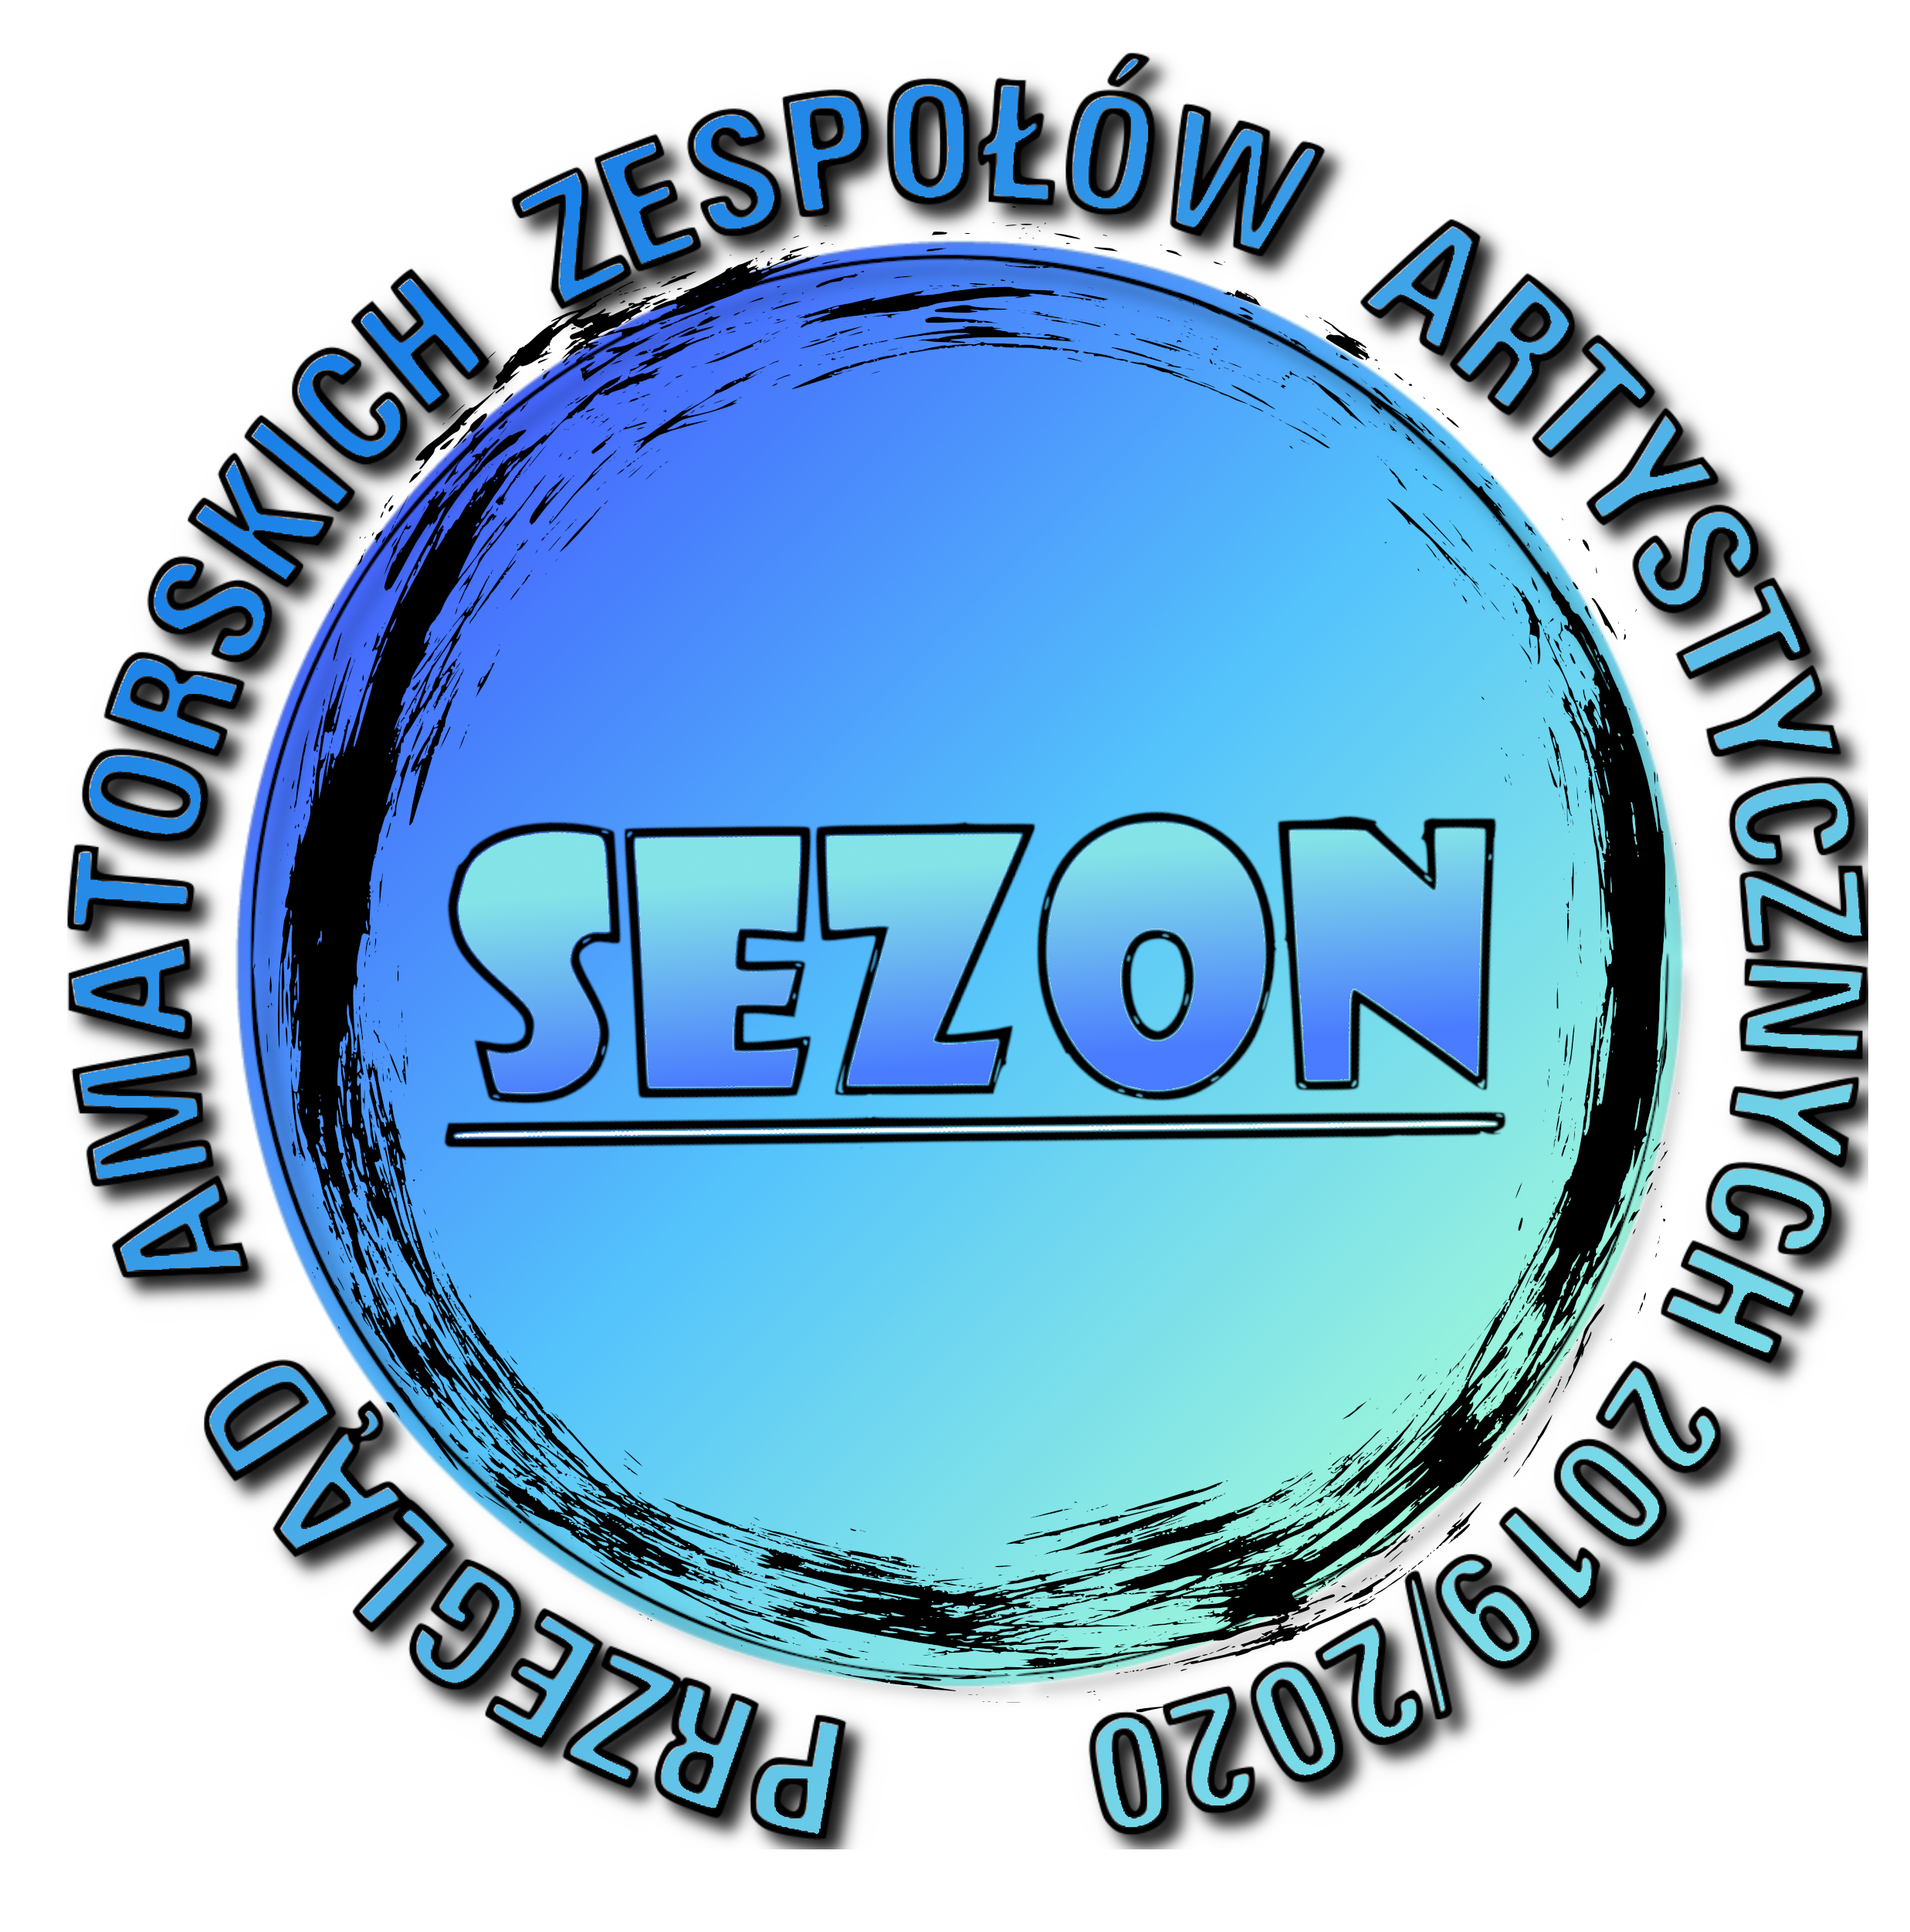 Werdykt Przeglądu SEZON 2020 w kategorii plastycznej